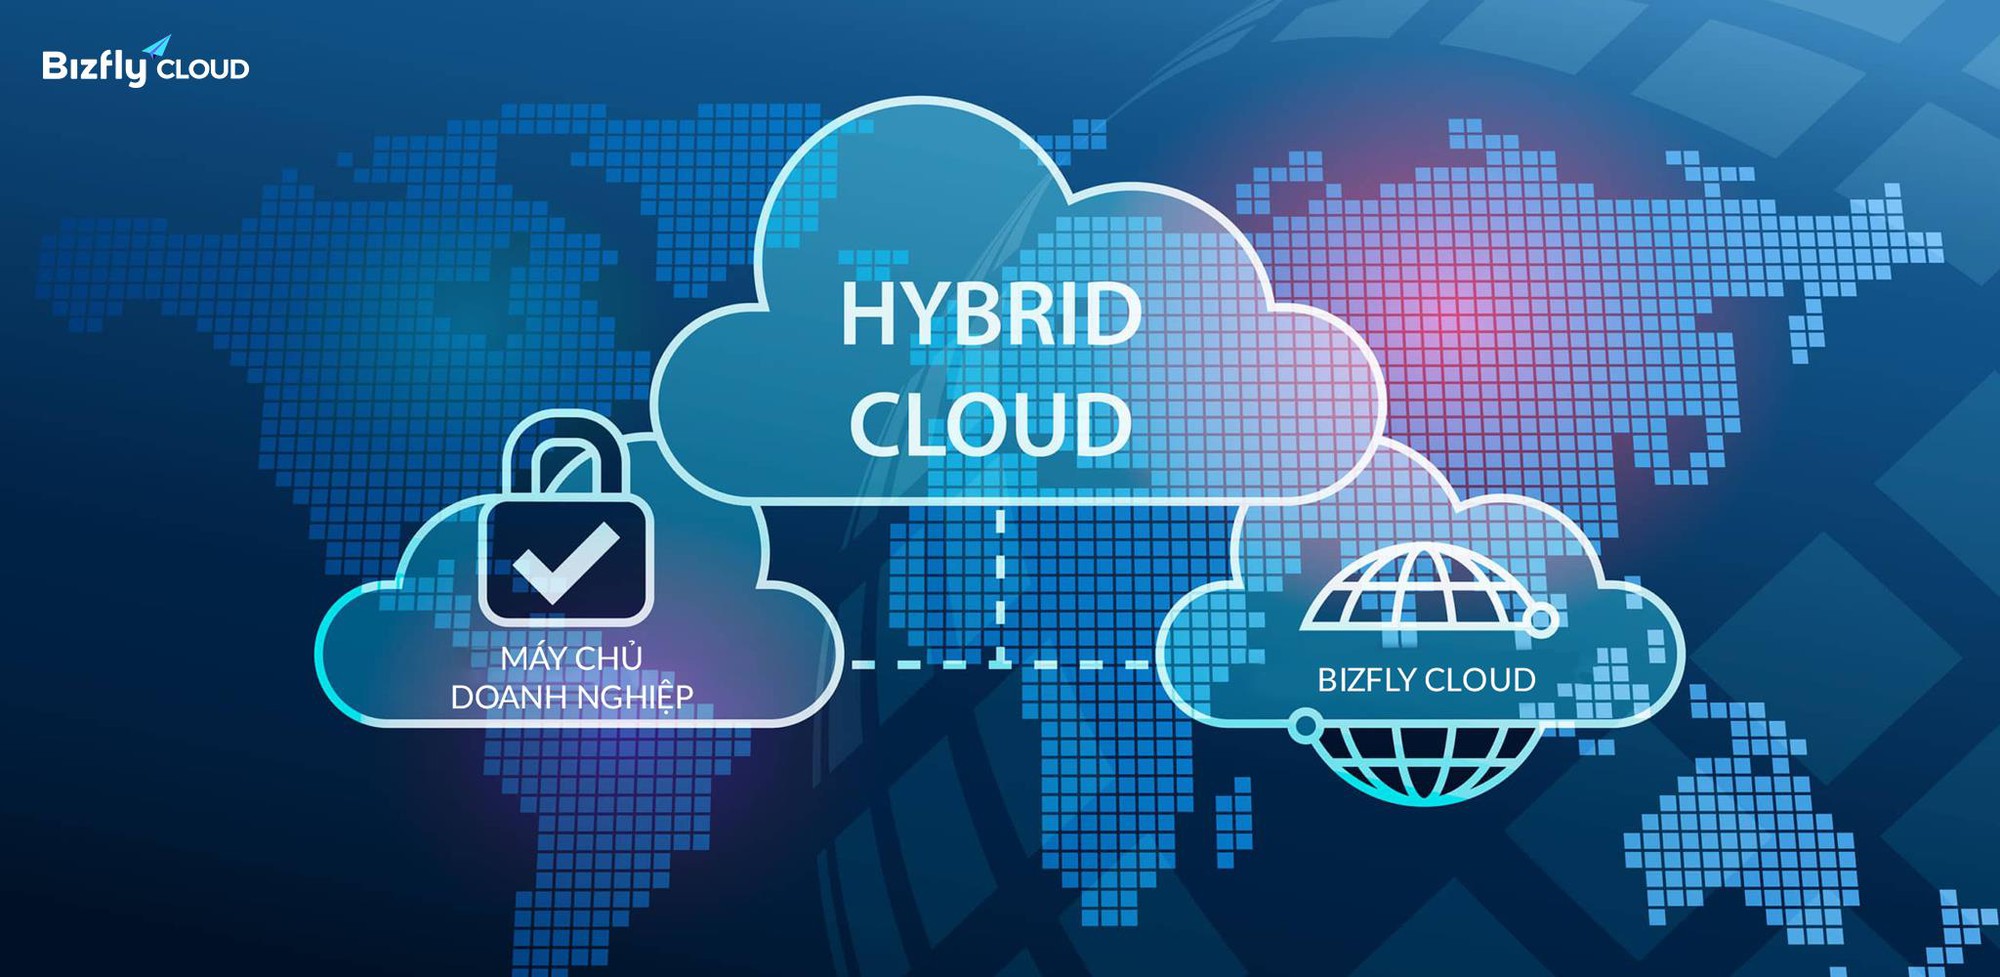  Phương án chuyển đổi sang dịch vụ cloud trong nước giúp doanh nghiệp cắt giảm chi phí công nghệ từ Bizfly Cloud - Ảnh 2.